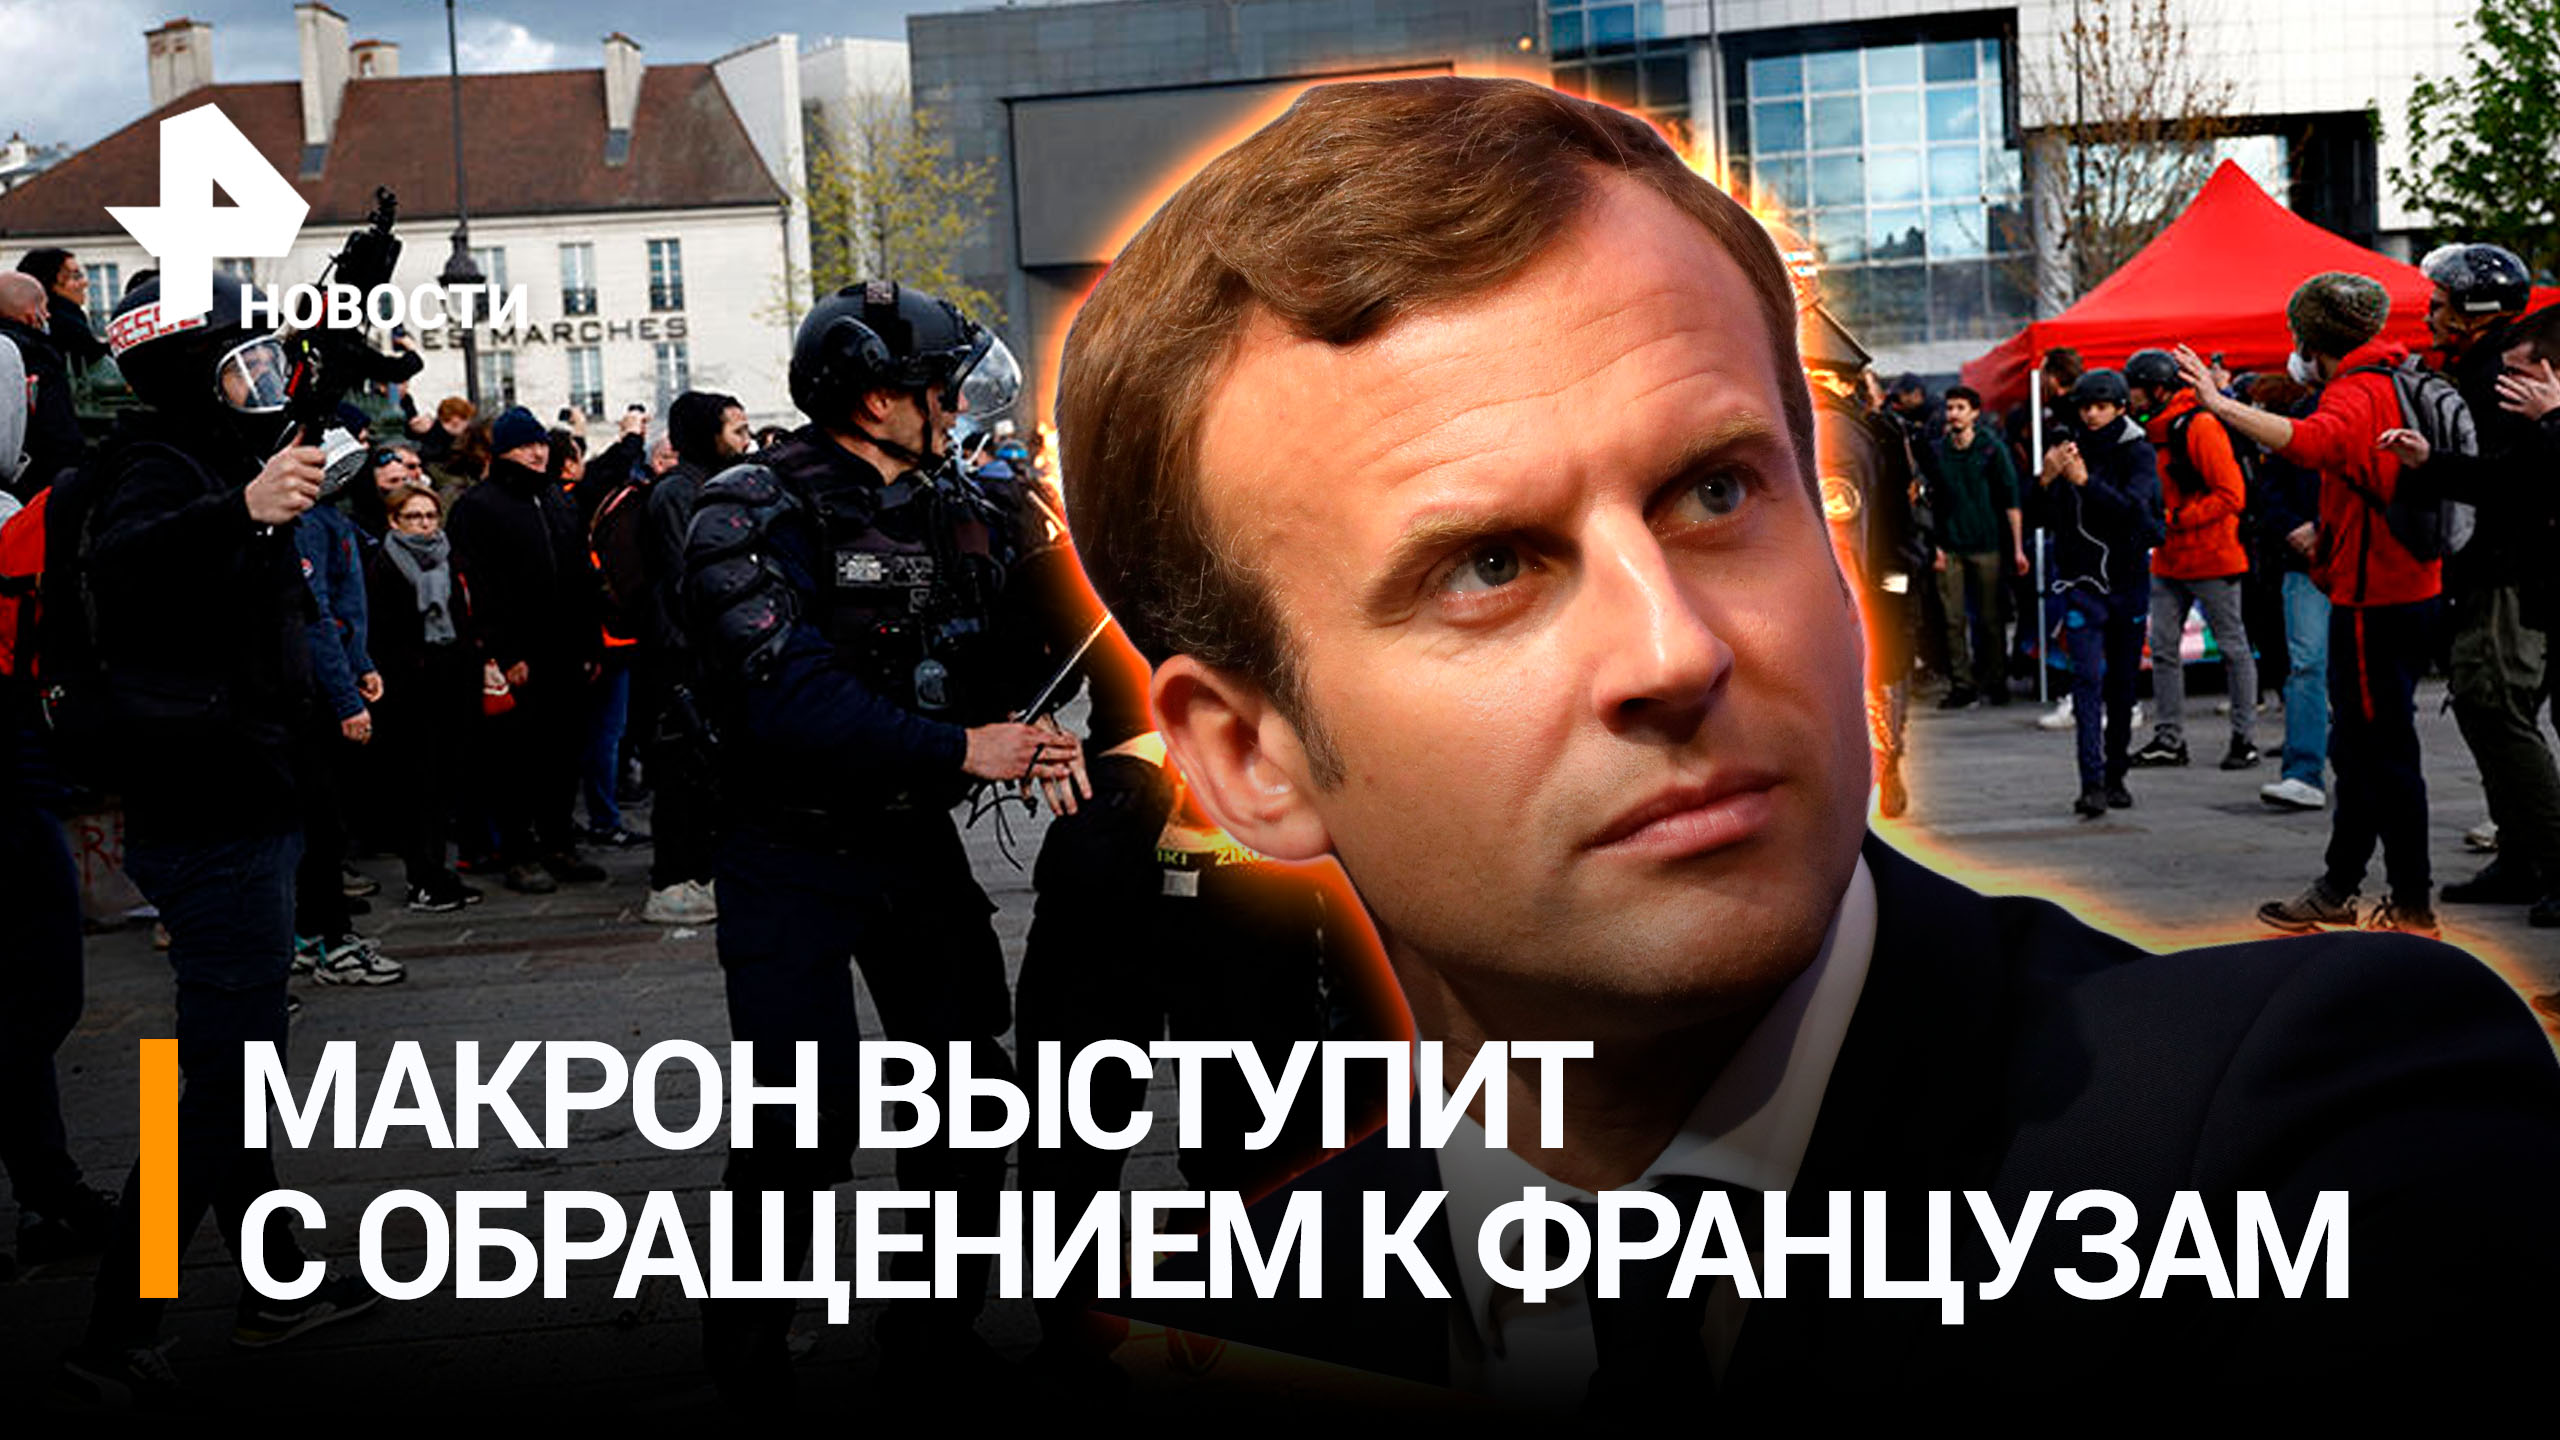 Макрон выступит с обращением к нации на фоне протестов во Франции / РЕН Новости